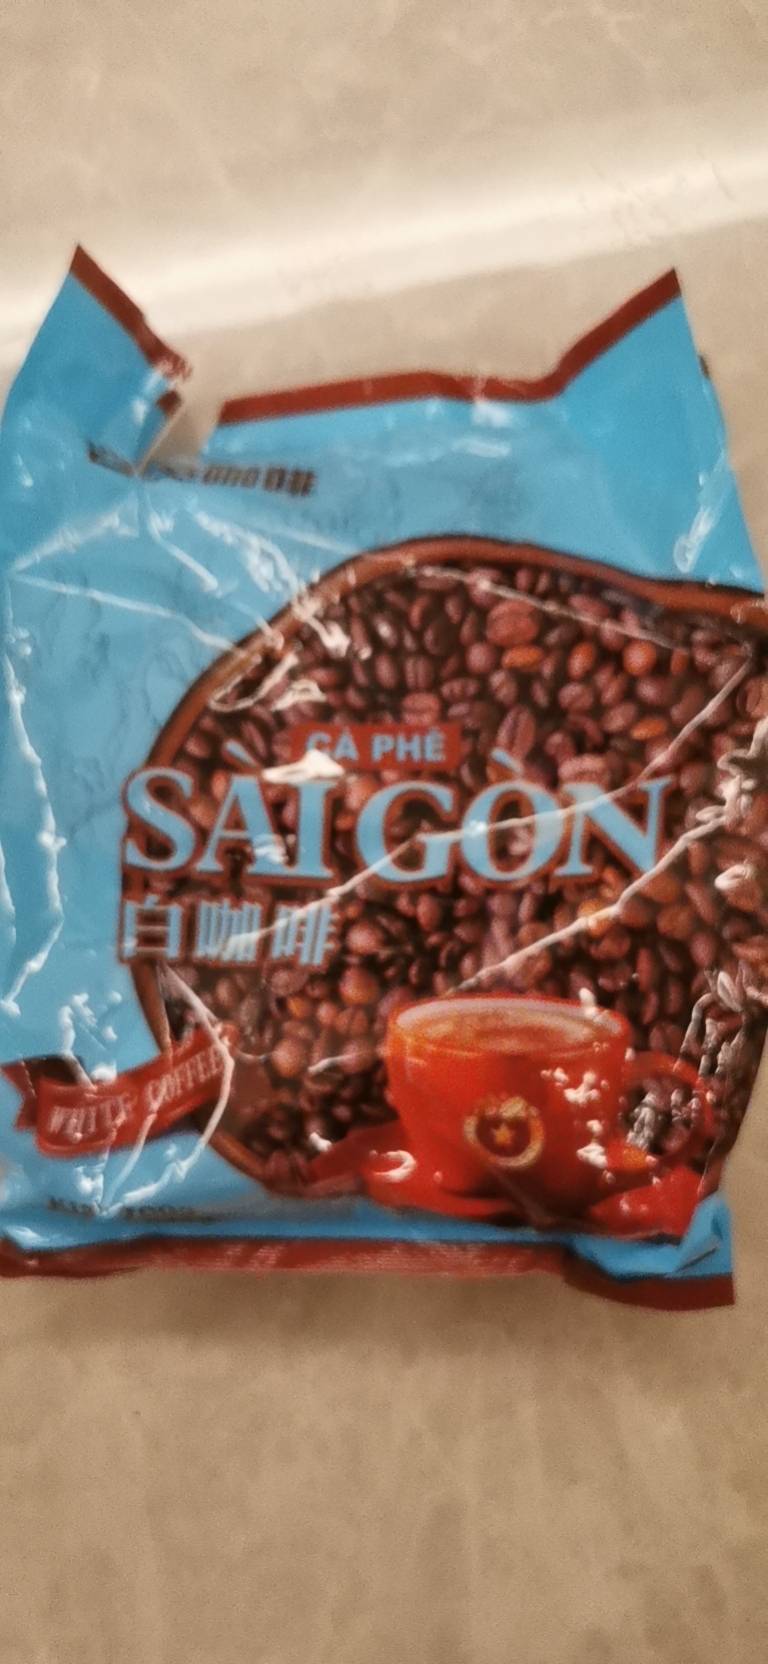 越南西贡咖啡 白咖啡700g(20条) 香浓醇香速溶进口咖啡粉 SAGOCOFFEE GF晒单图